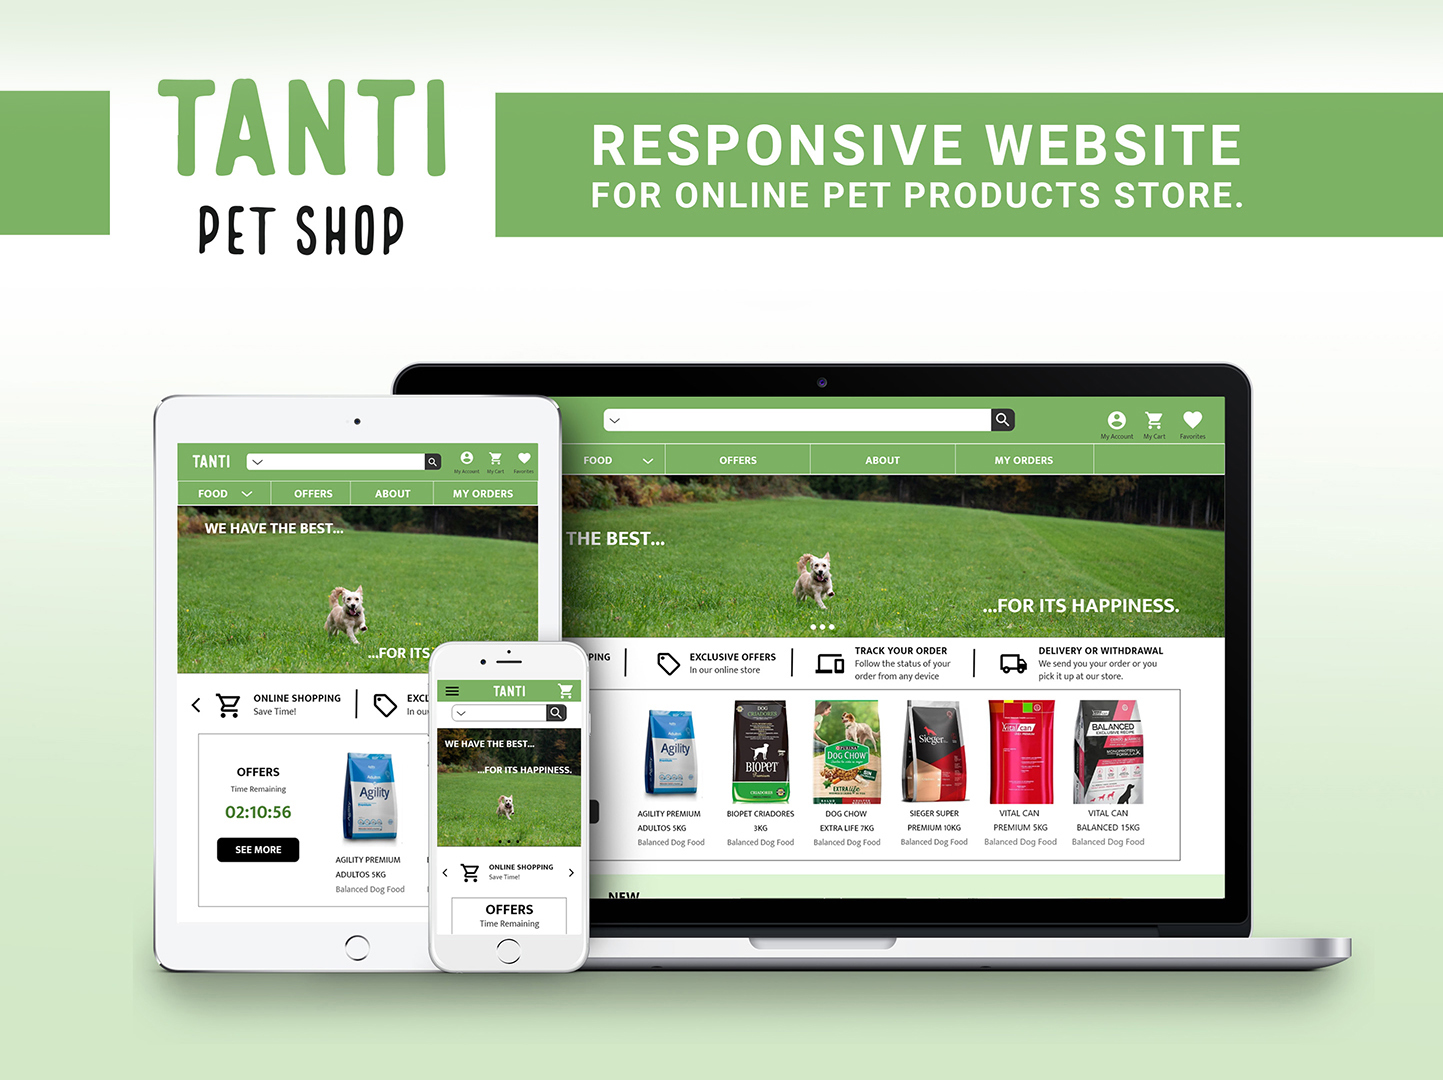 Presentación del sitio web diseñado para el negocio Tanti Pet Shop